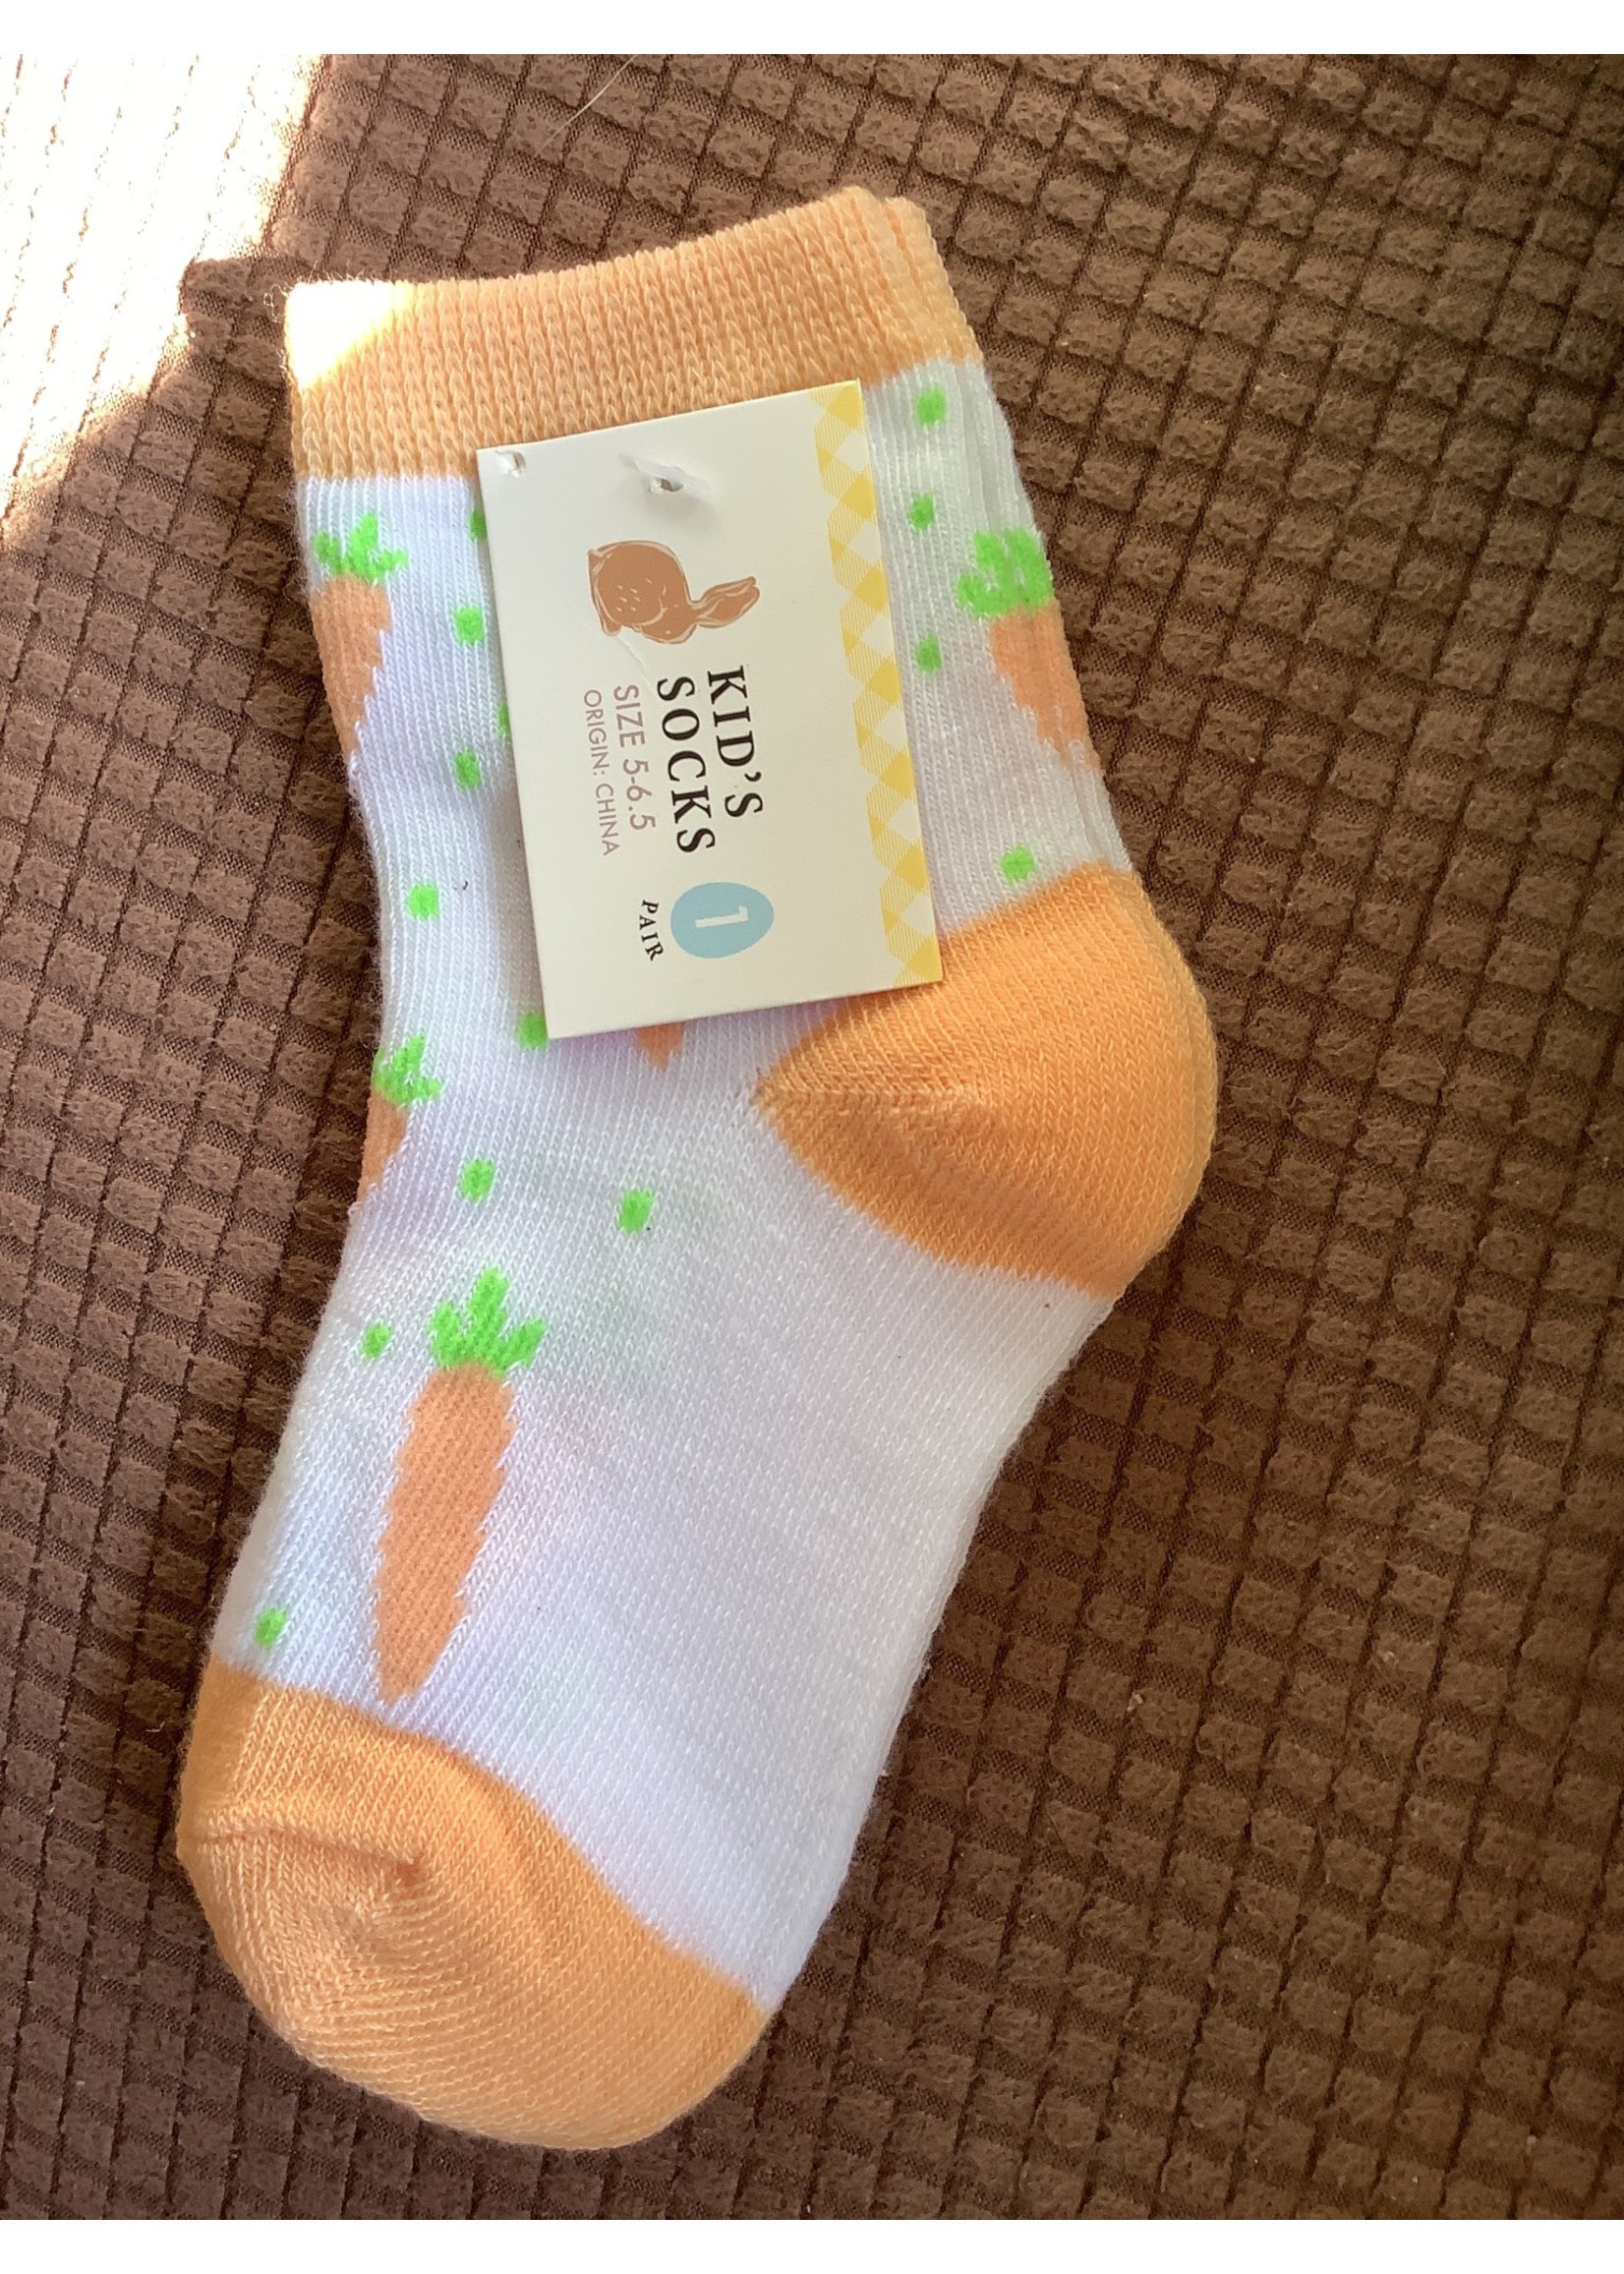 Kid’s Easter socks - Orange/white Carrots 5-6.5